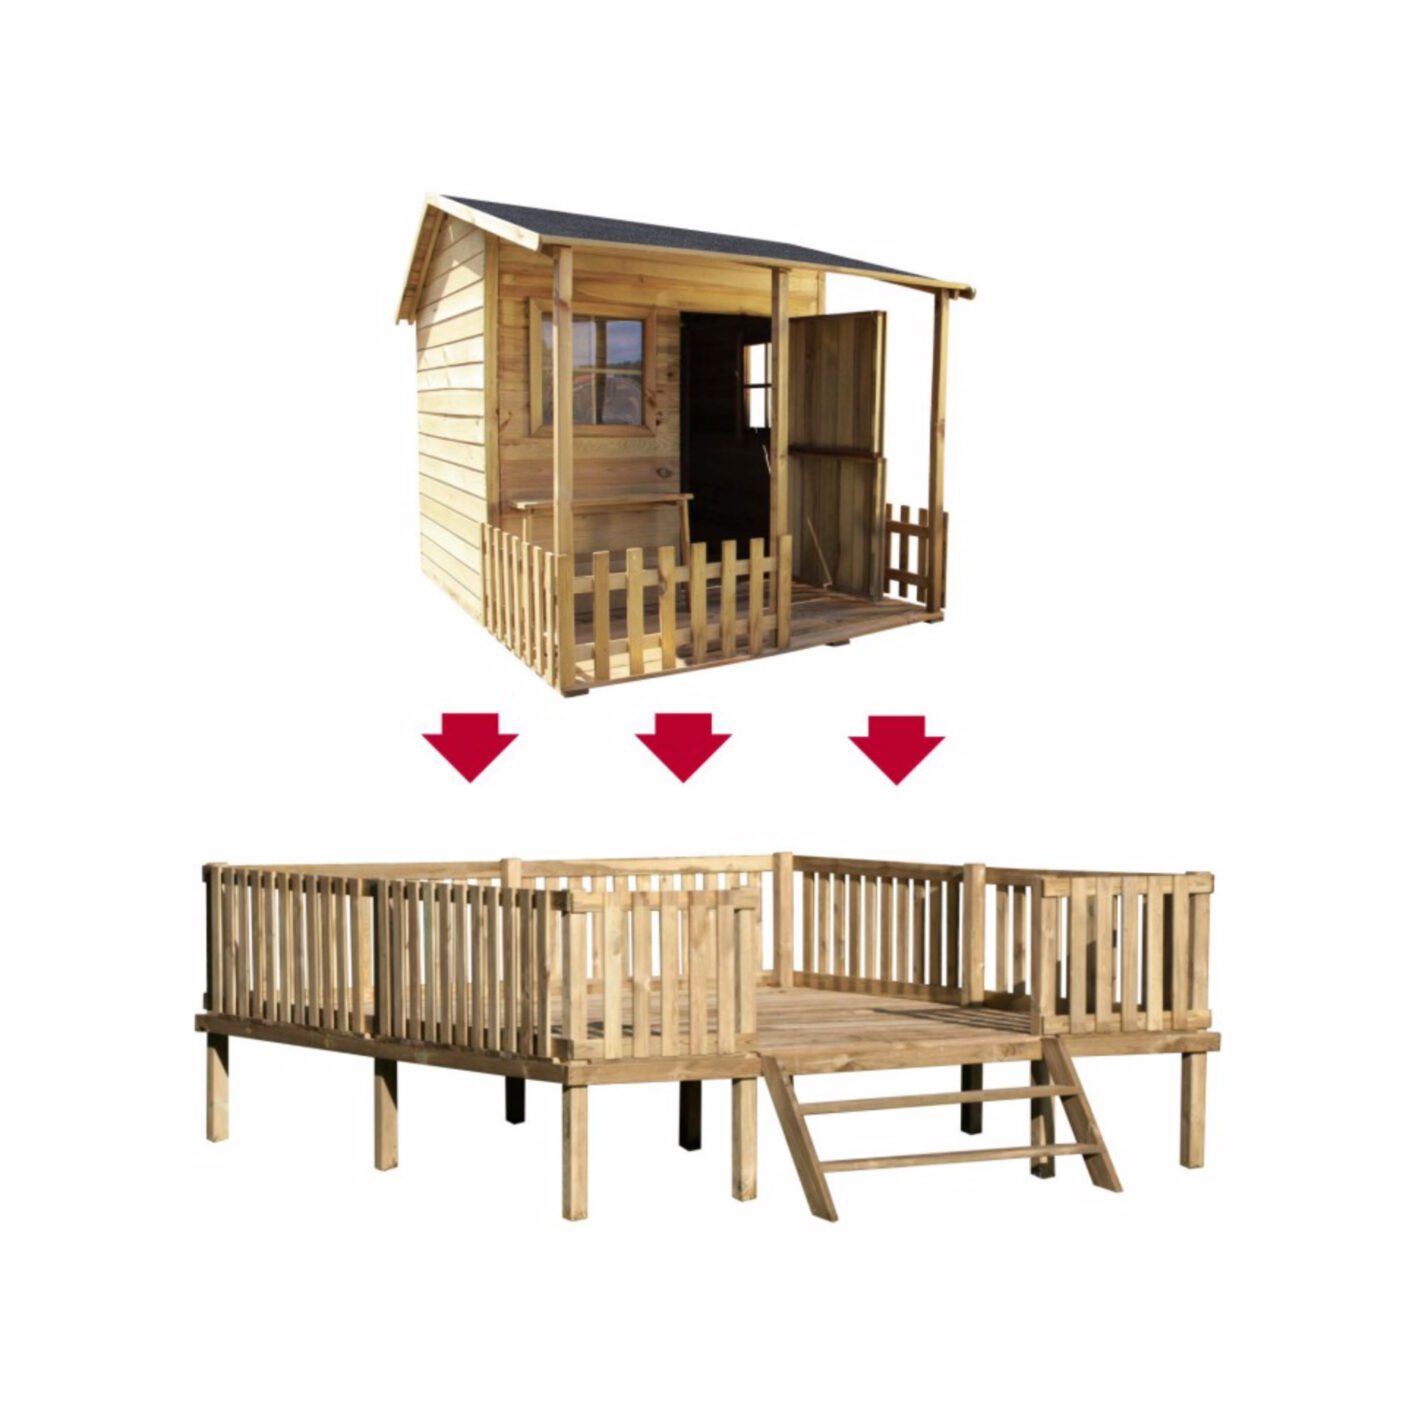 Medinis vaikų žaidimų namelis "Giliukas" su medine platforma